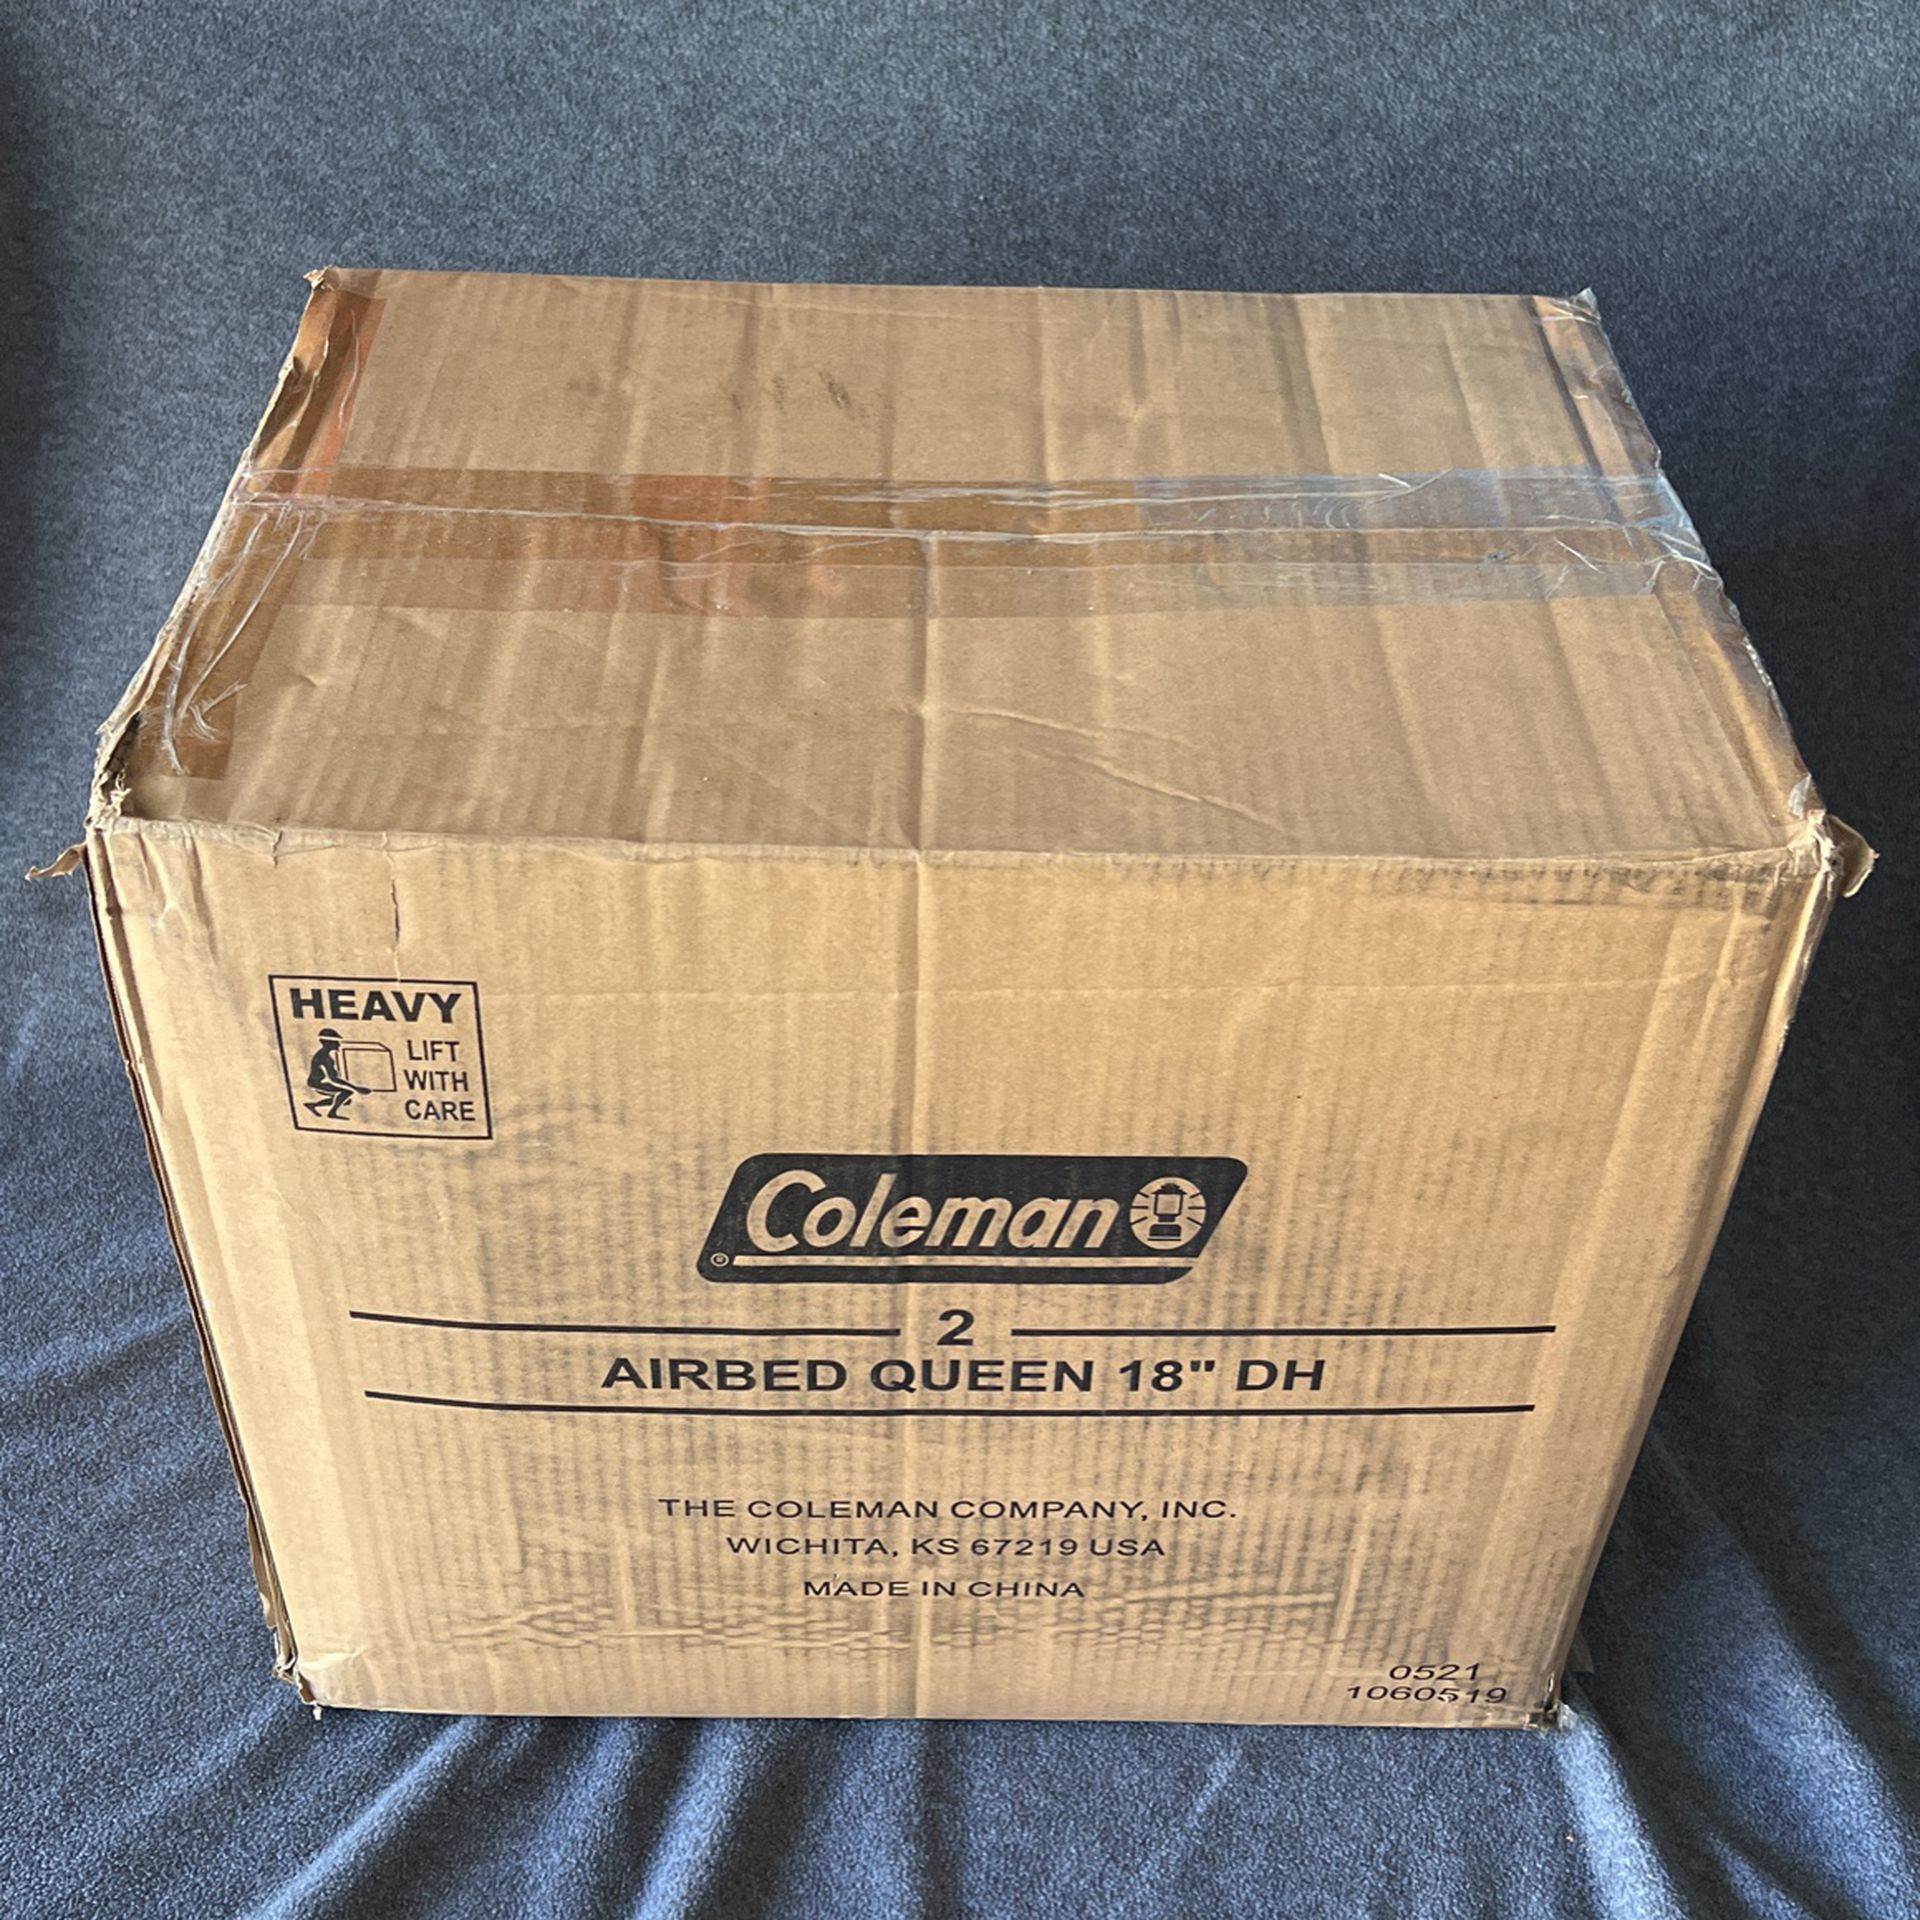 NEW Coleman GuestRest Double-High Air Mattress – Queen